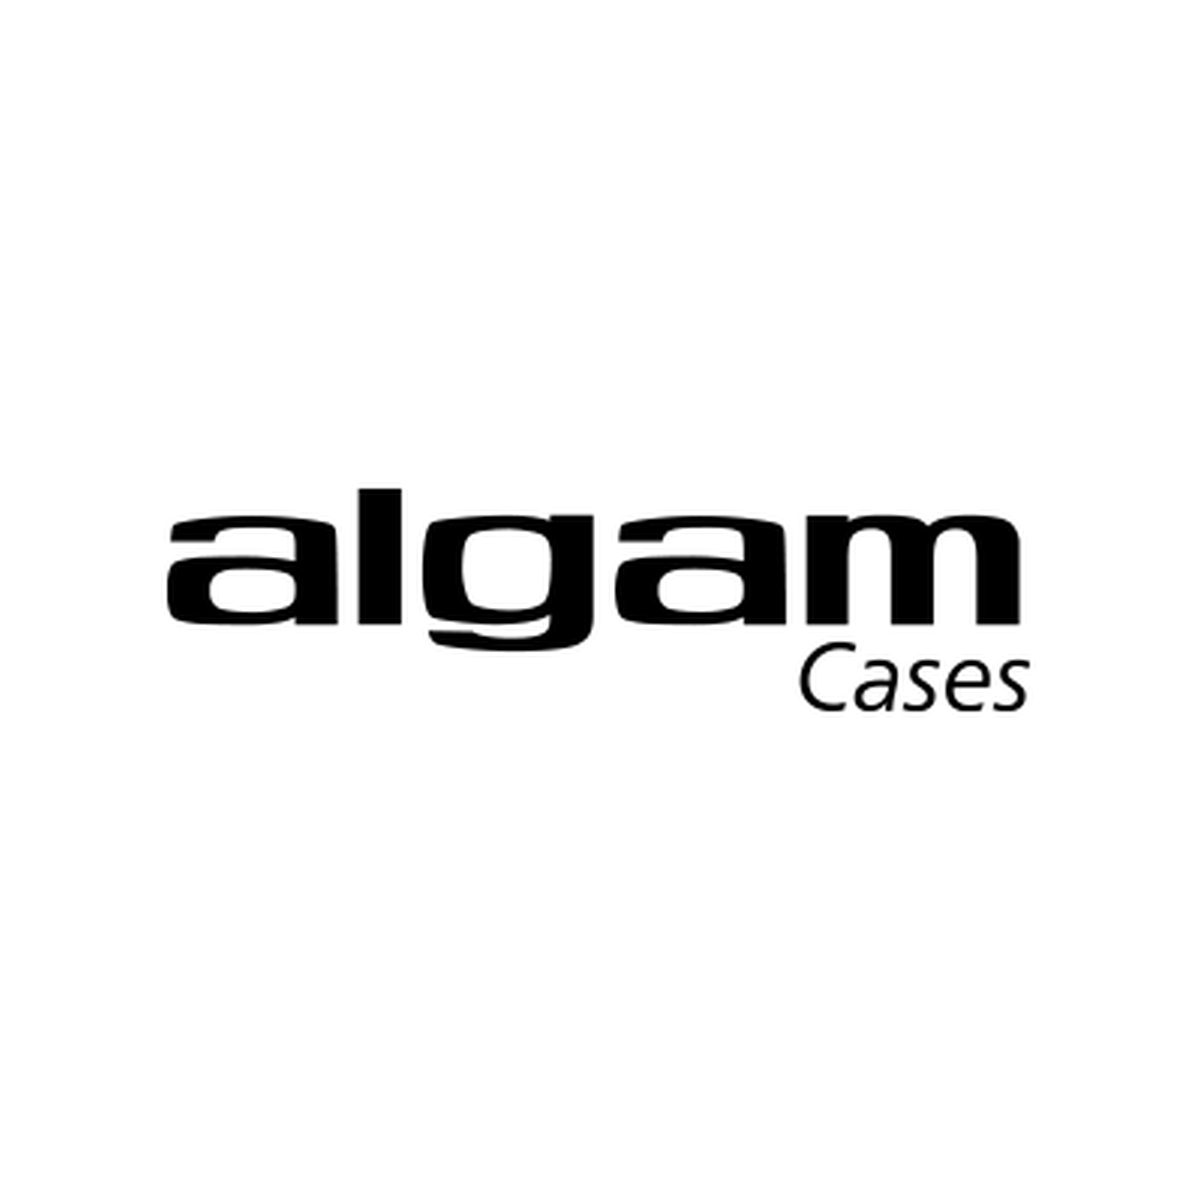 Algam cases